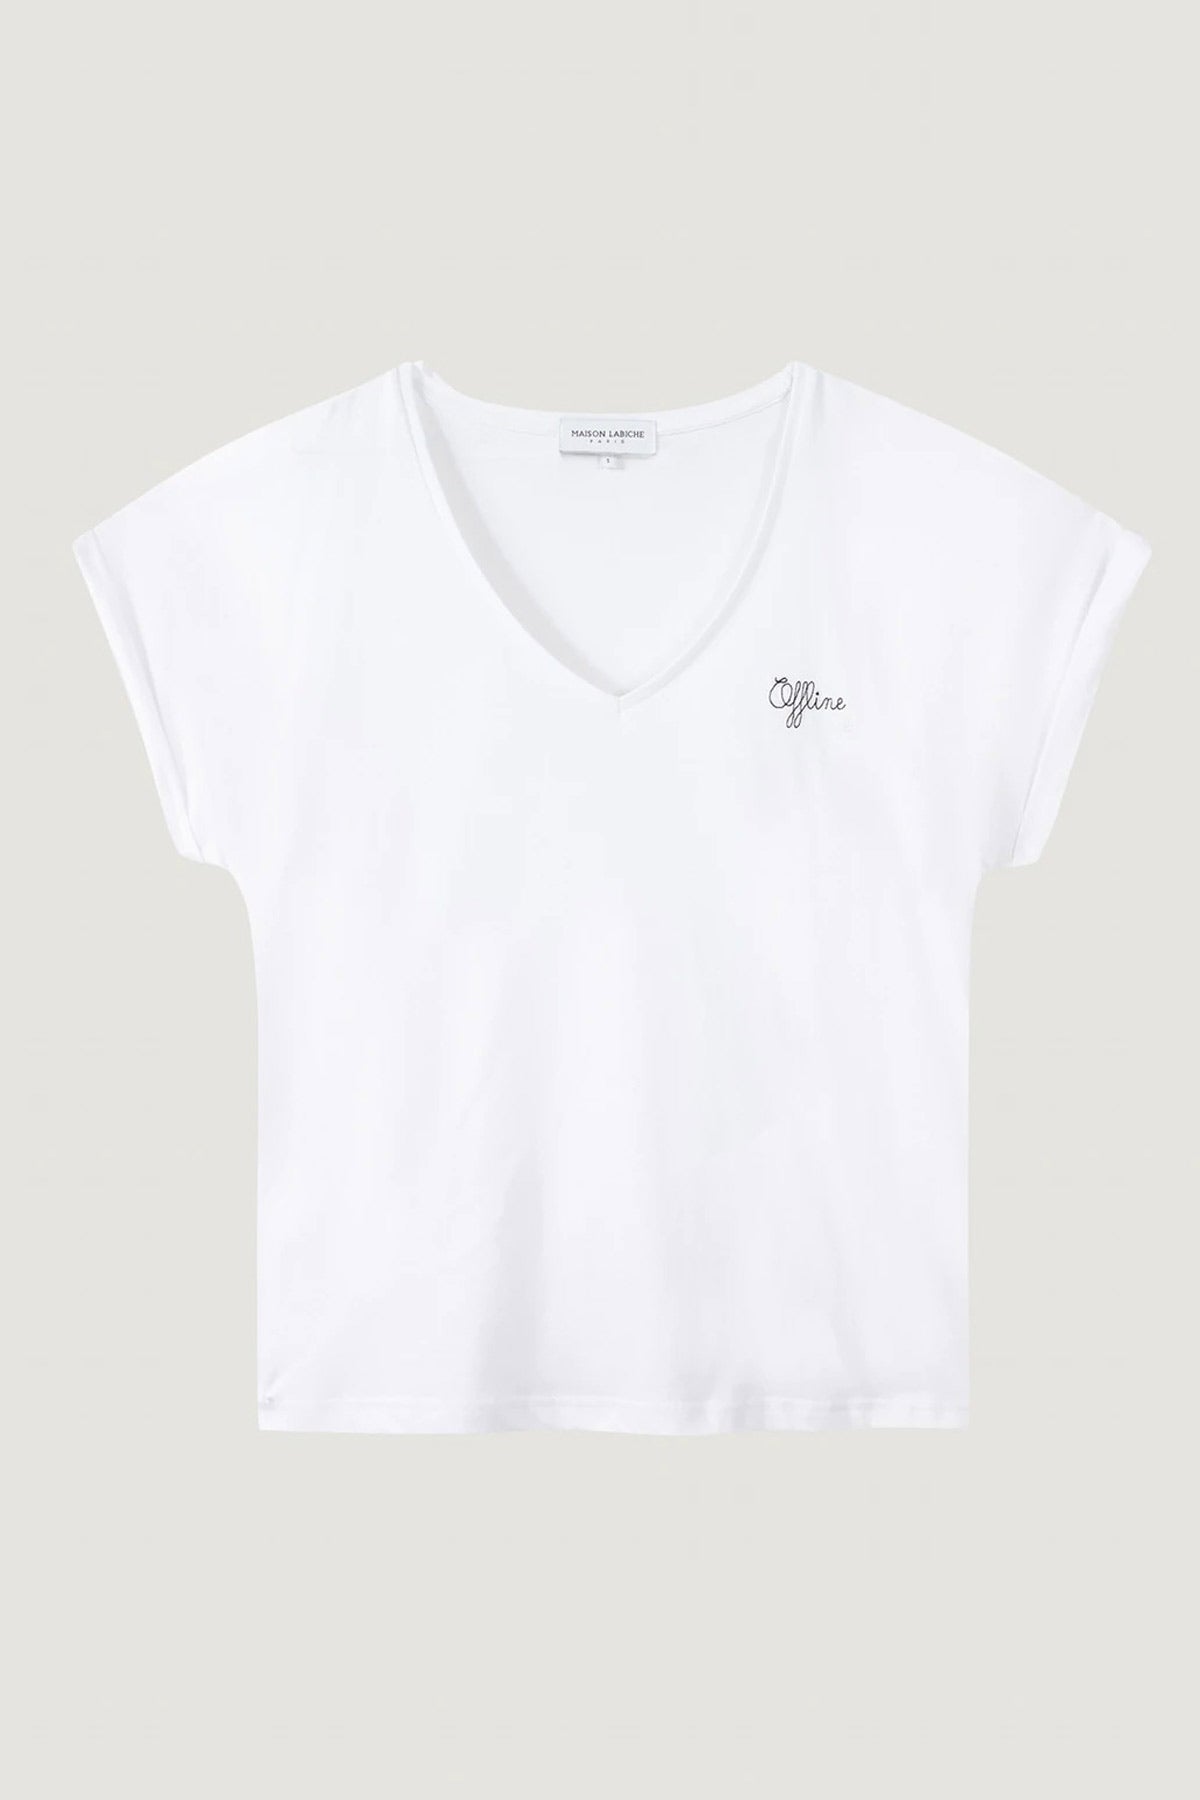 T-Shirt Chateau Offline - White - Maison Labiche